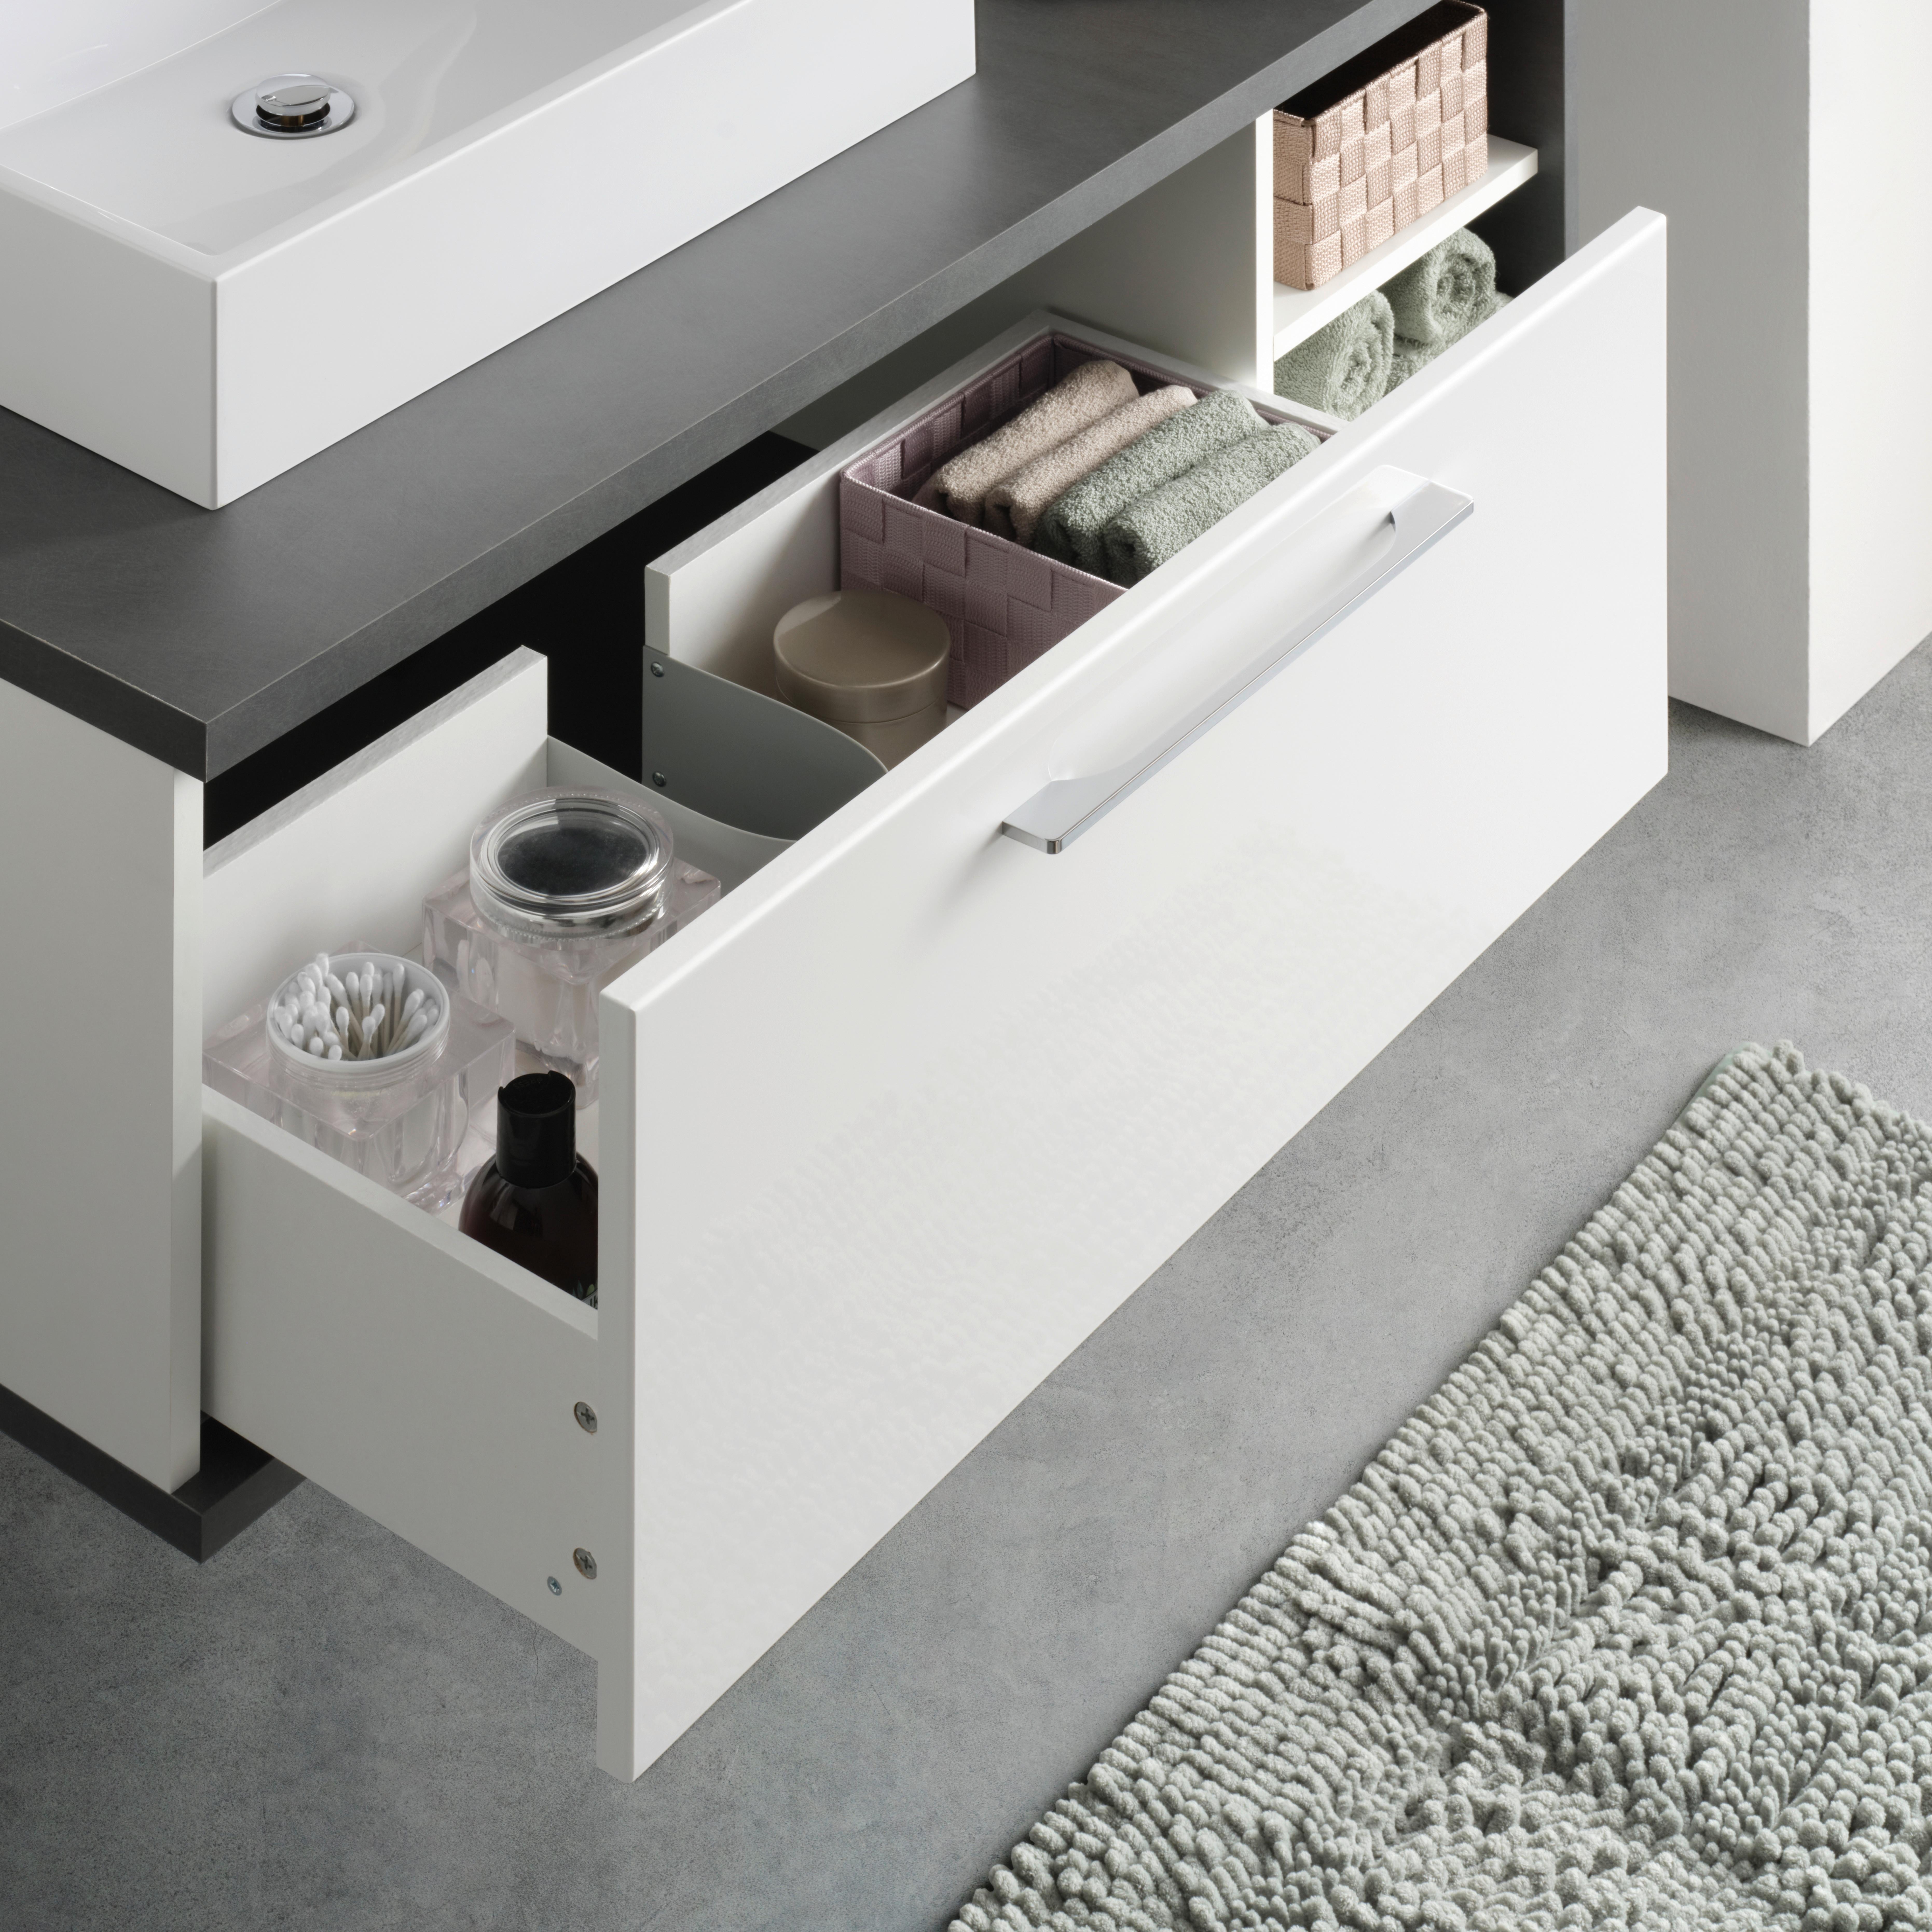 Waschtischkombi in Anthrazit/Weiß - Weiß hochglanz/Anthrazit, MODERN, Holzwerkstoff/Kunststoff (110/39/53cm) - Modern Living